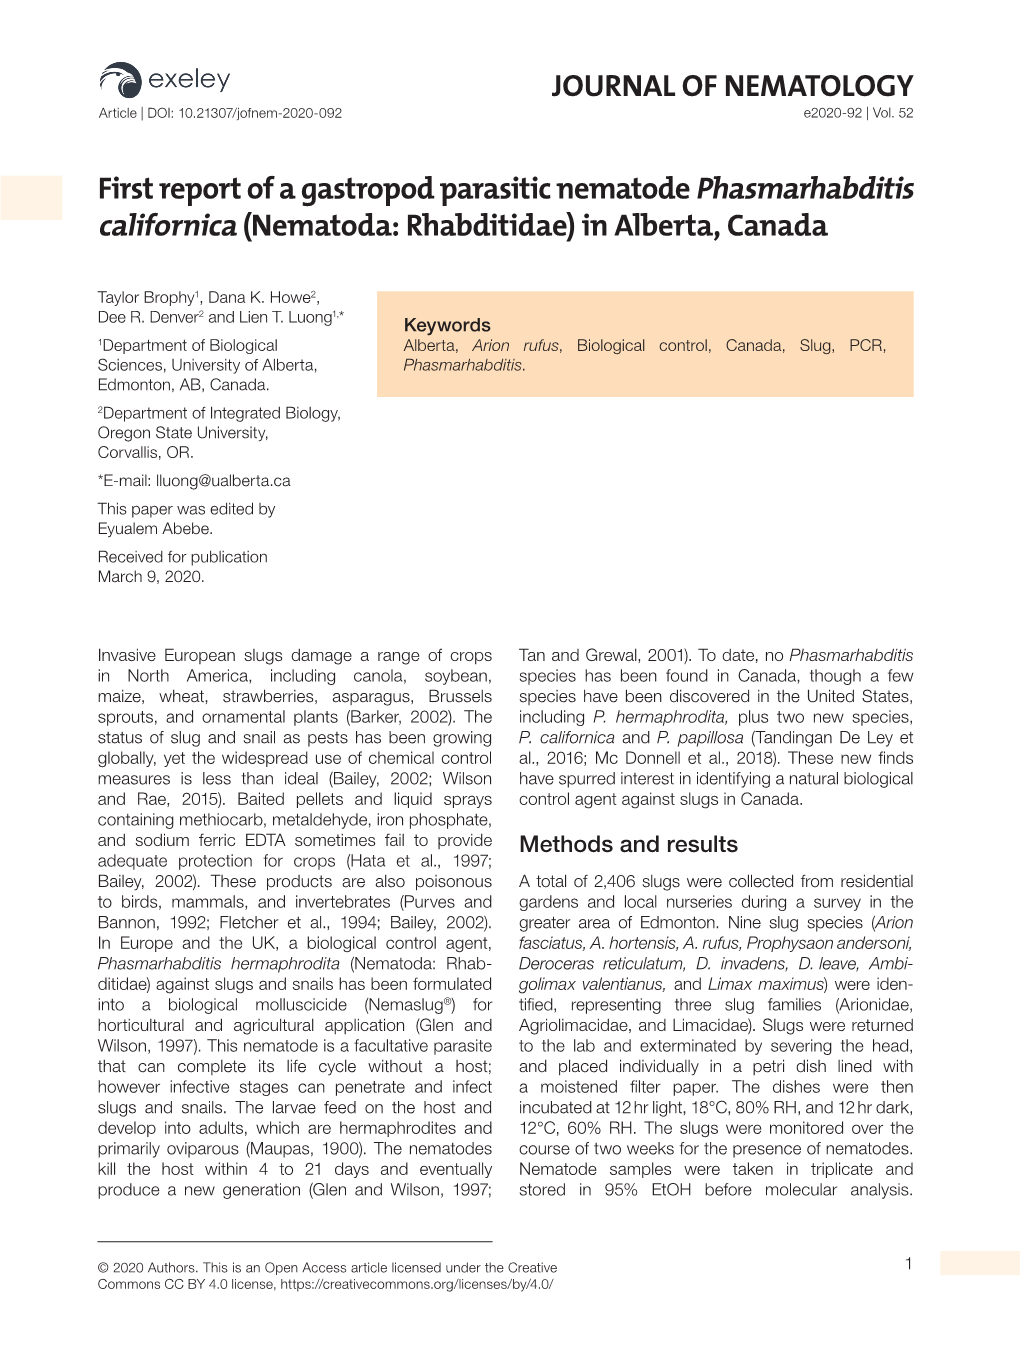 First Report of a Gastropod Parasitic Nematode Phasmarhabditis Californica (Nematoda: Rhabditidae) in Alberta, Canada